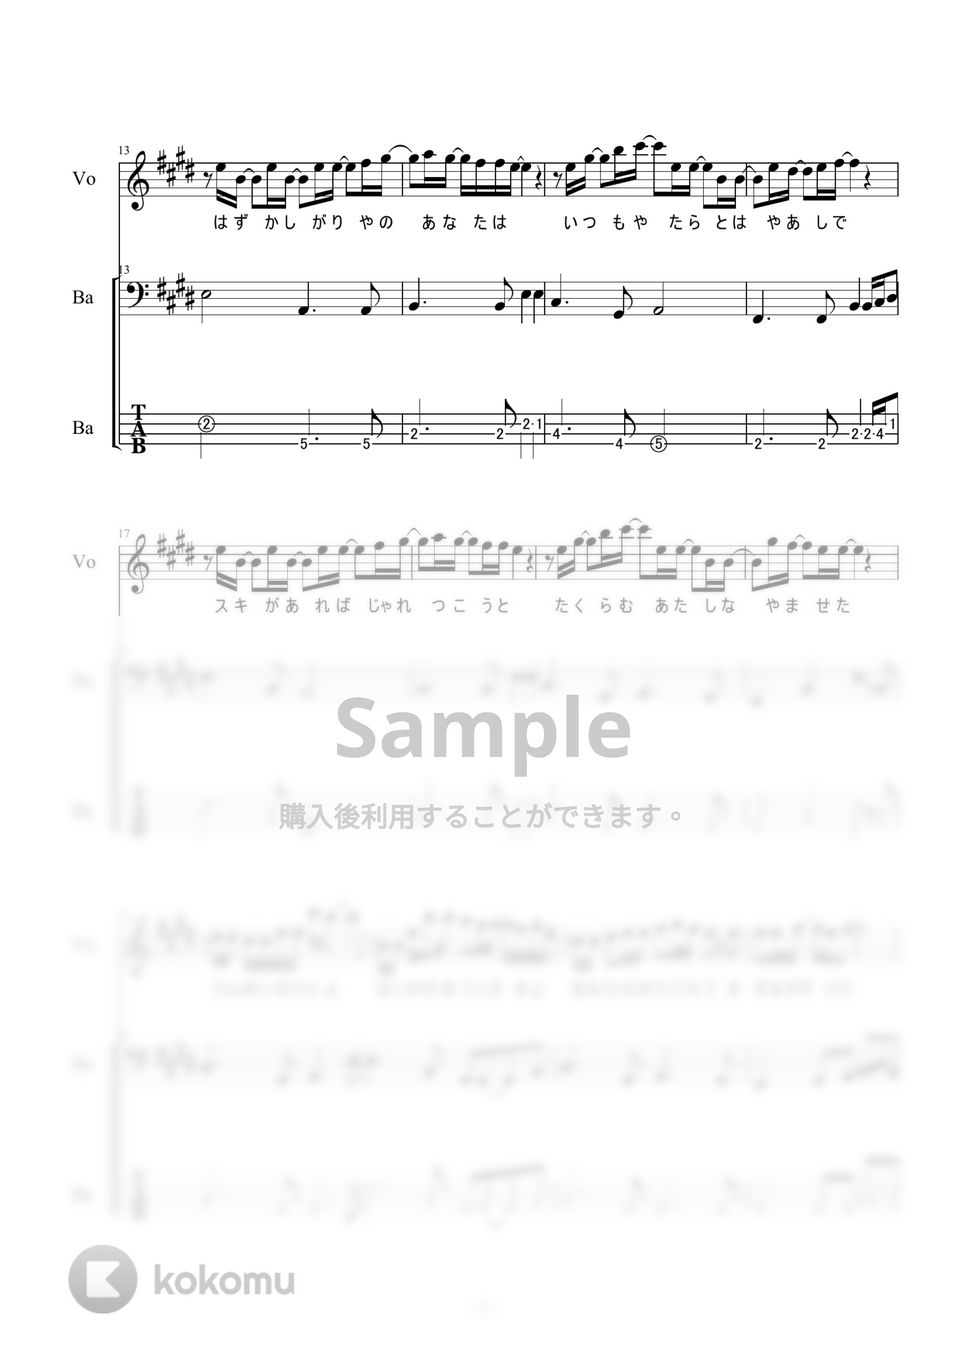 いきものがかり - コイスルオトメ (ベース) by 二次元楽譜製作所